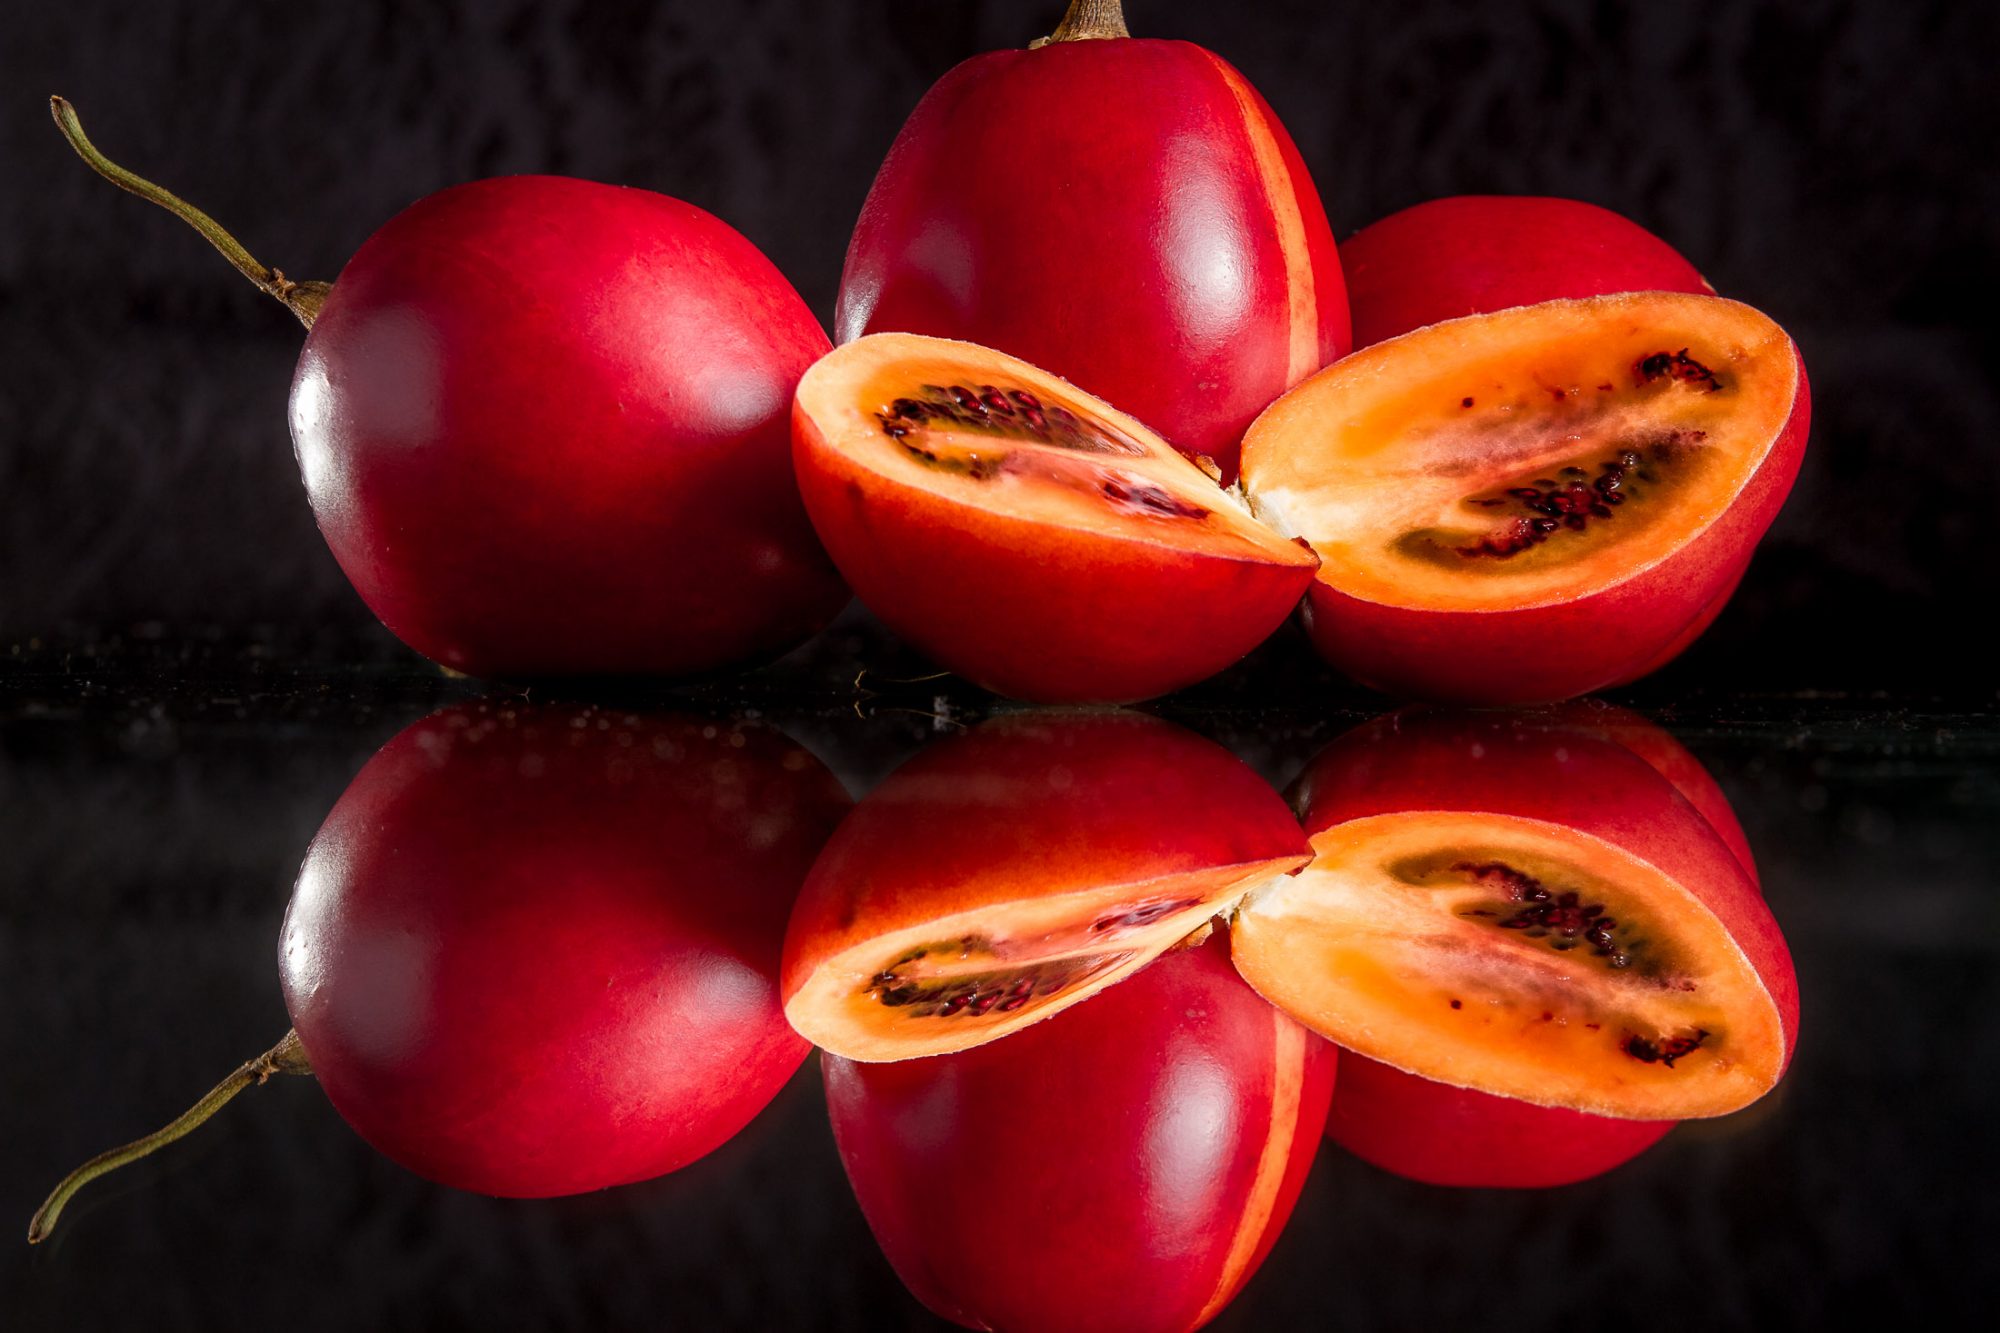 Цифомандра (томатное дерево) - метод выращивания, отзывы, фото, описание